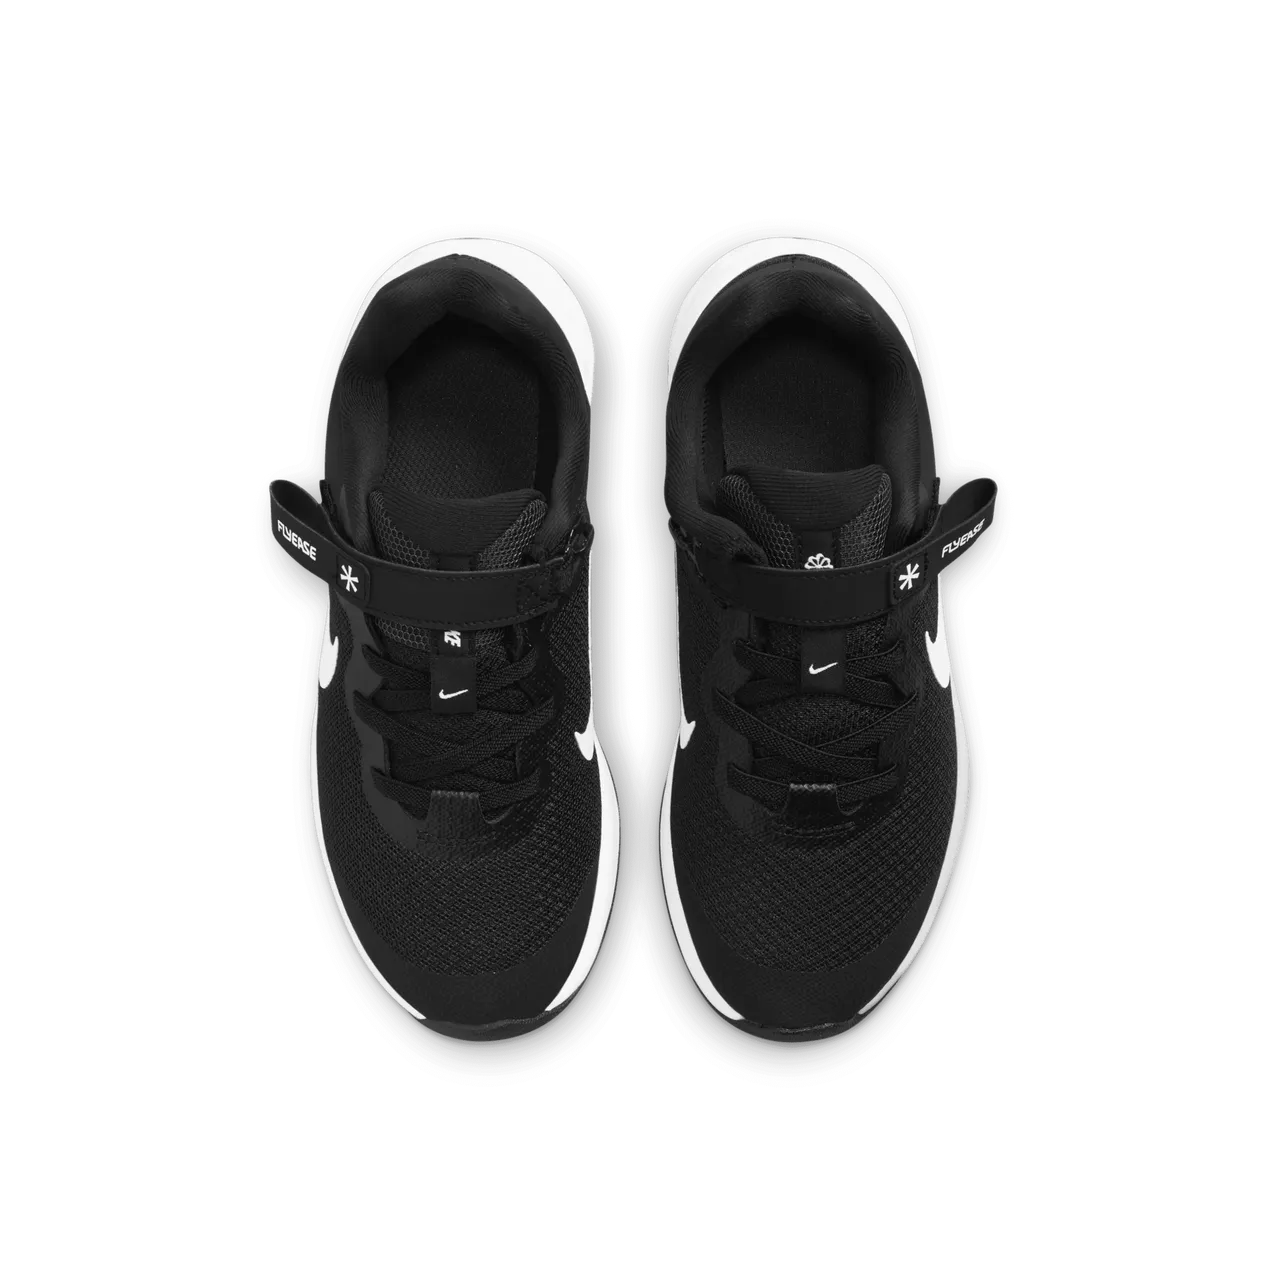 Nike Revolution 6 FlyEase Schuhe für einfaches Anziehen/Ausziehen für jüngere Kinder - Schwarz